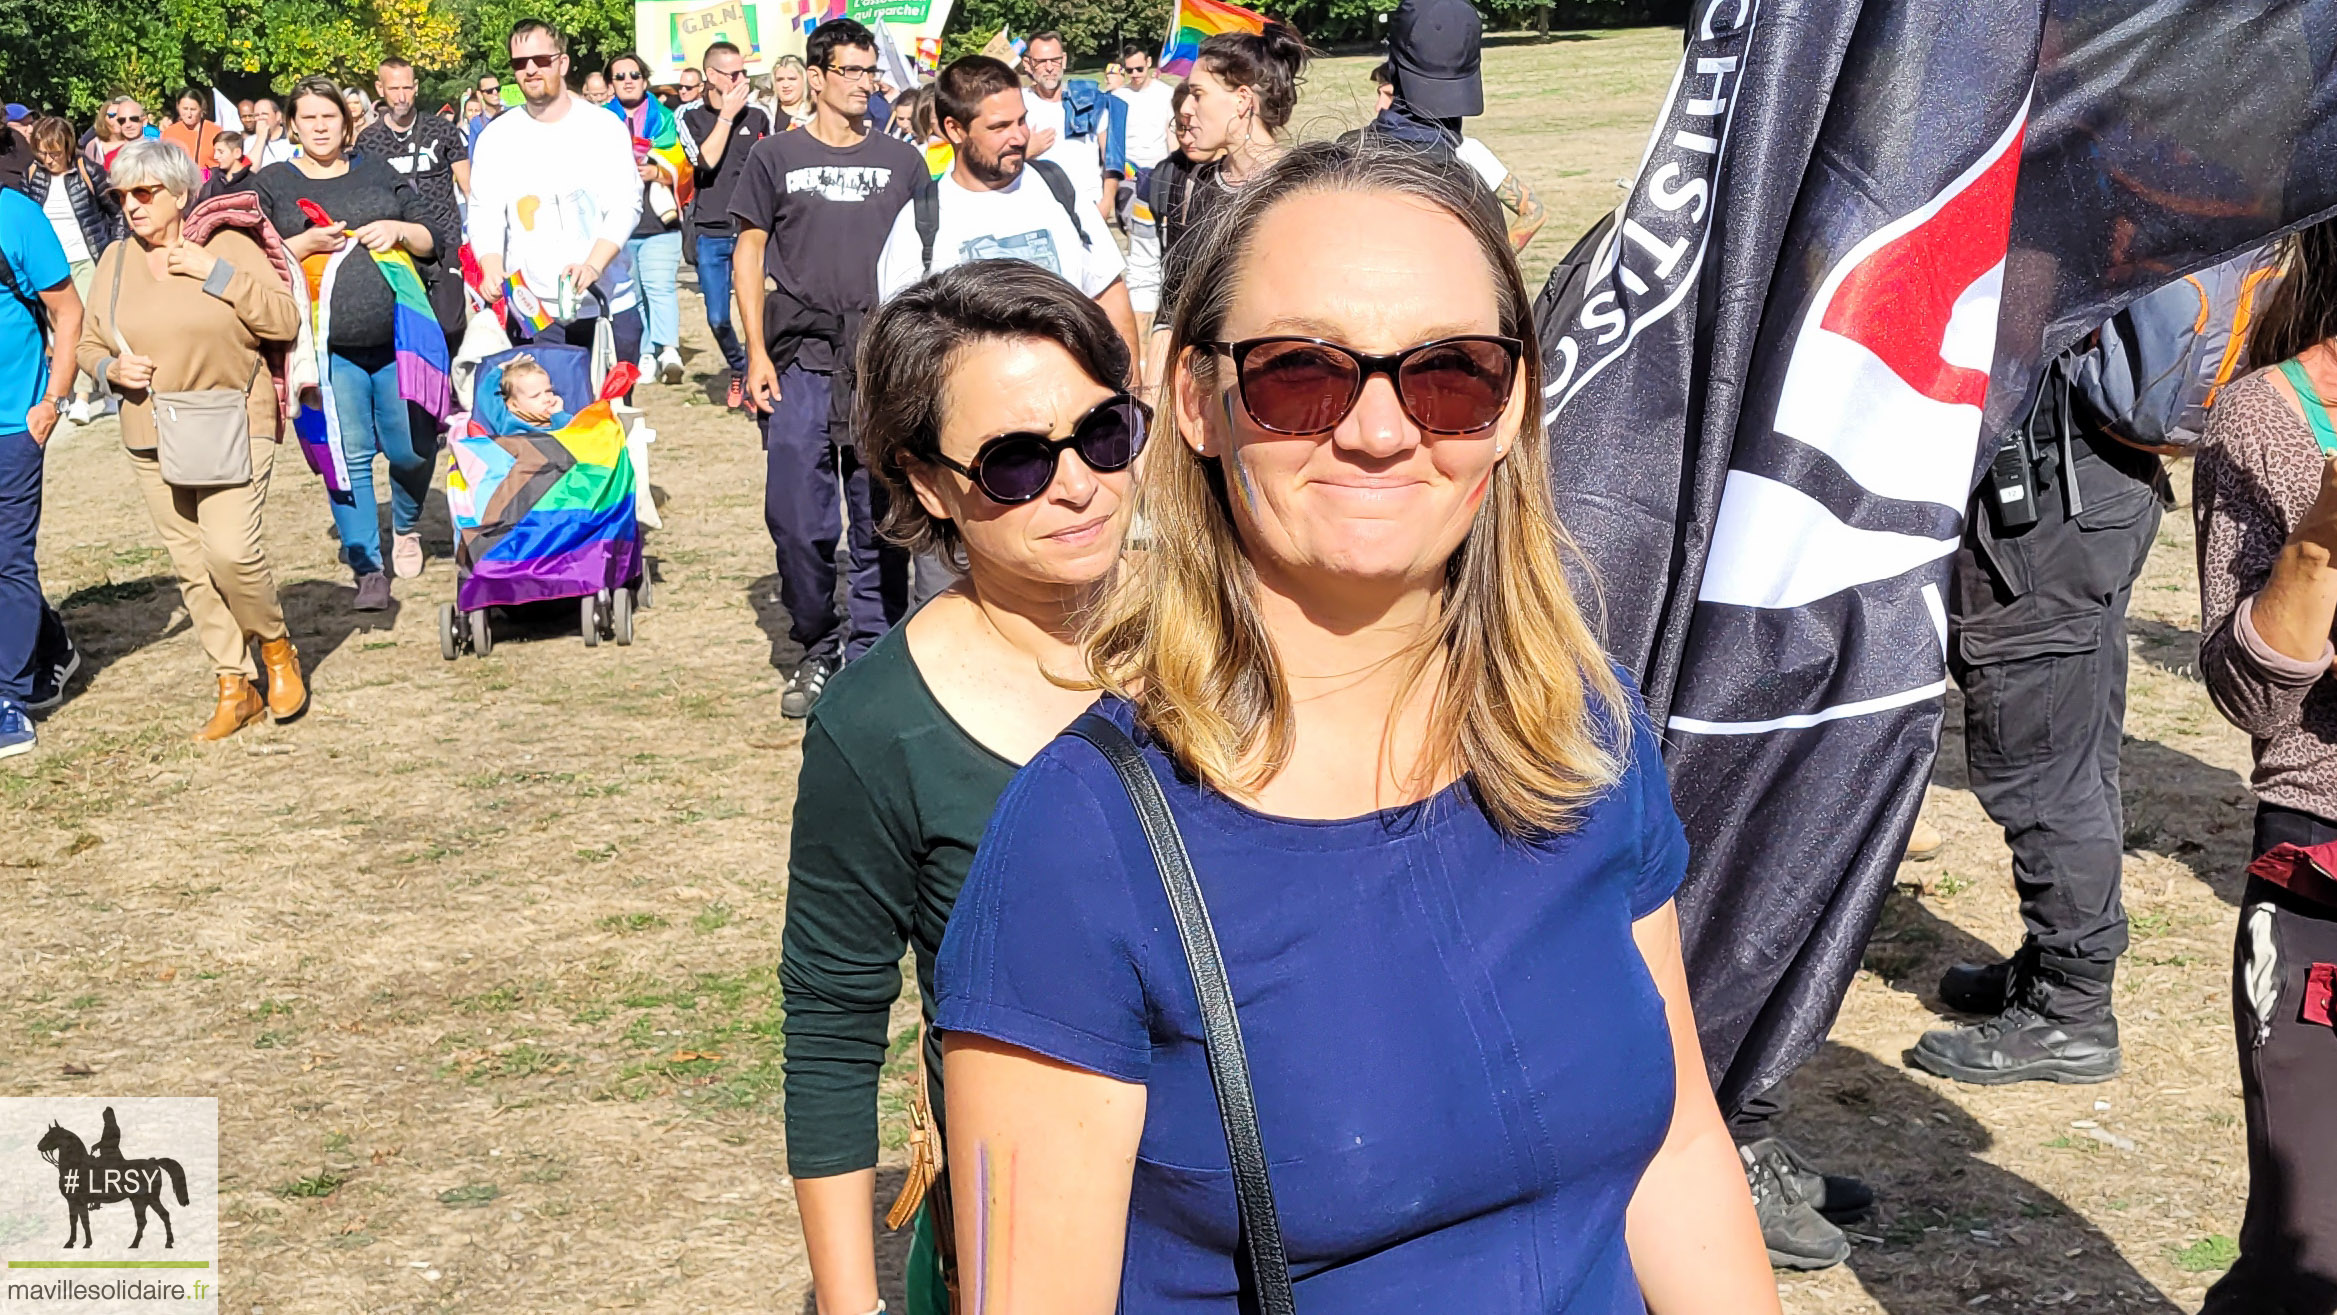 Marche des fierté LGBT LRSY mavillesolidaire.fr Vendée 1 13